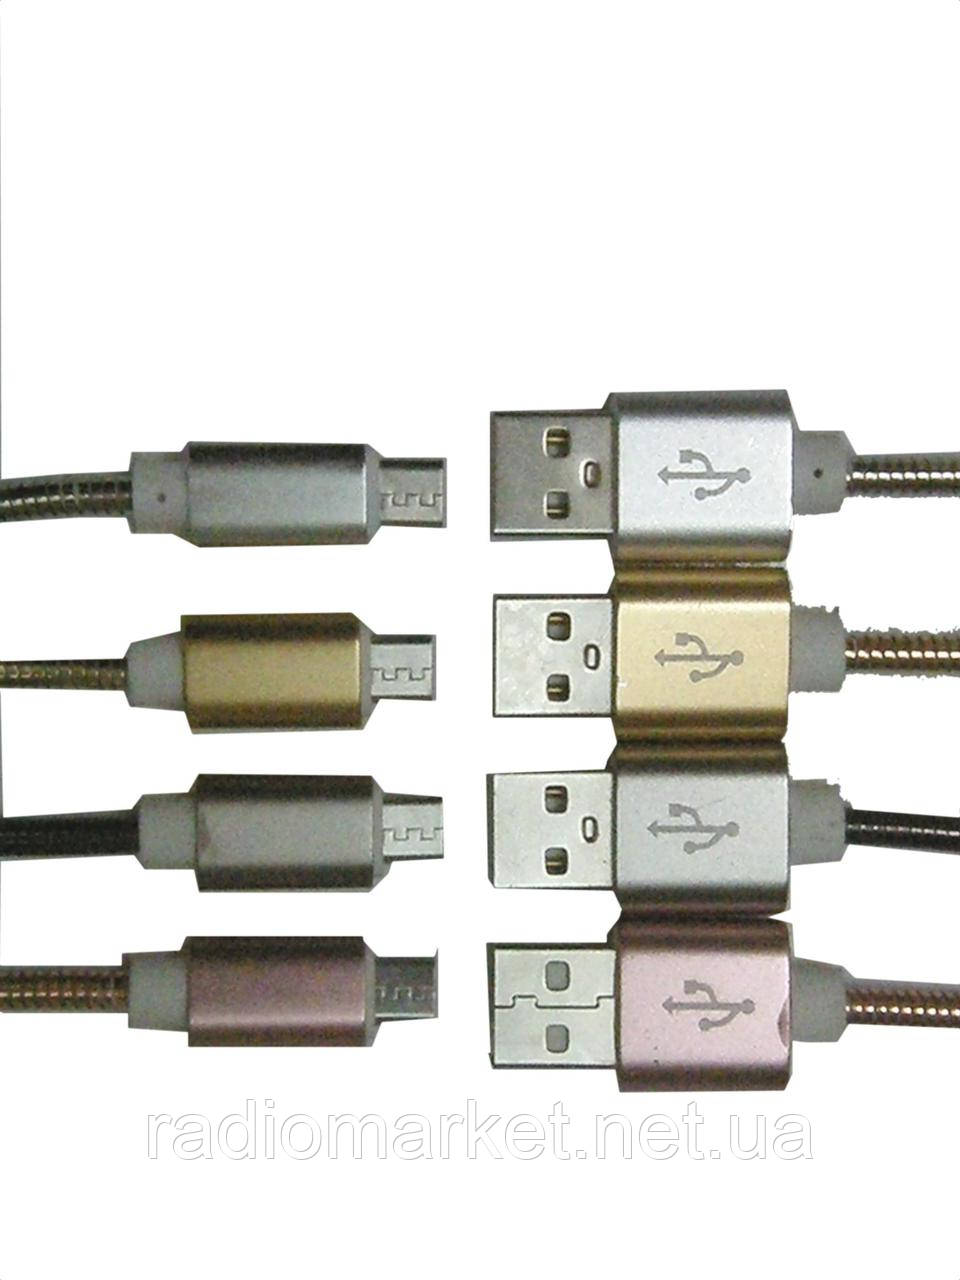 Шнур комп'ютерний "Tcom", штекер USB А — штекер misro USB, металева ізоляція,Ø 4,5 мм, 1 м